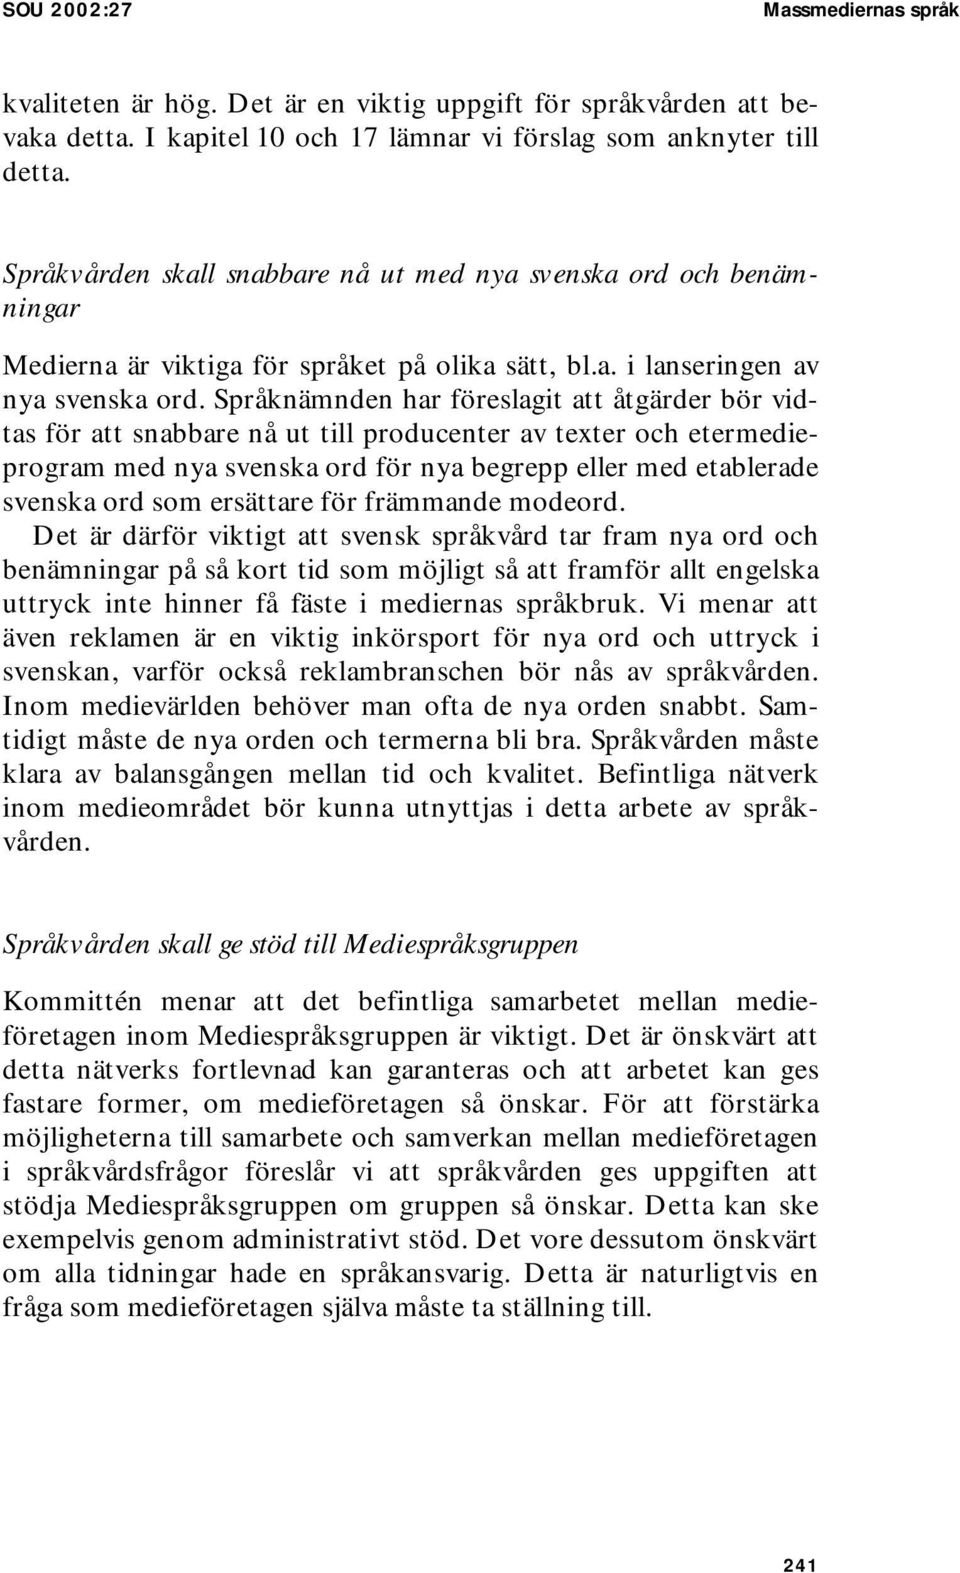 Språknämnden har föreslagit att åtgärder bör vidtas för att snabbare nå ut till producenter av texter och etermedieprogram med nya svenska ord för nya begrepp eller med etablerade svenska ord som